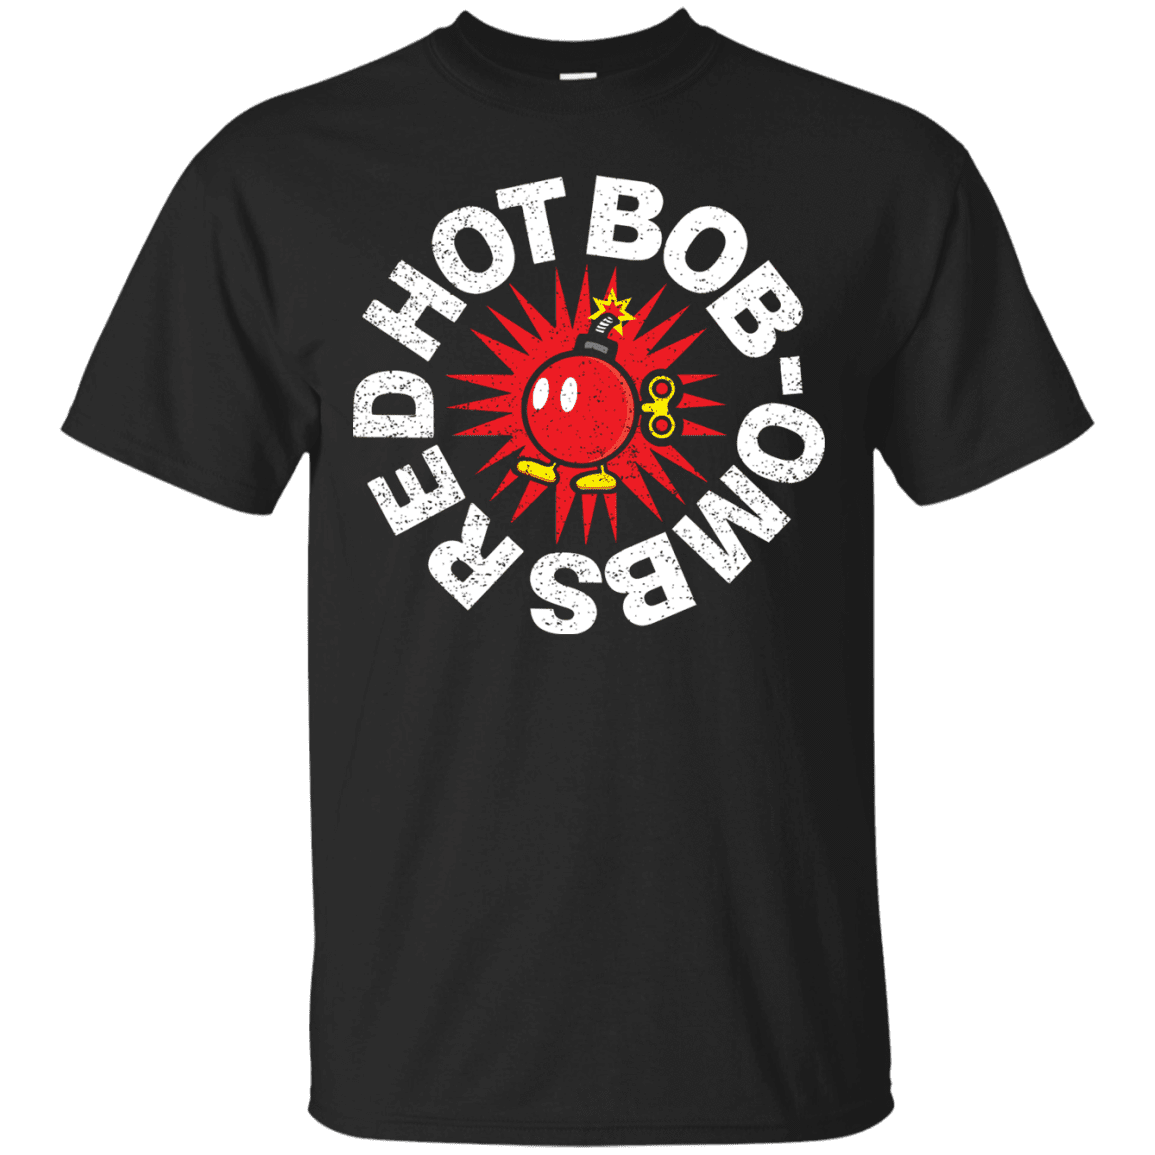 T-Shirts Black / S Red Hot Bob-Ombs T-Shirt